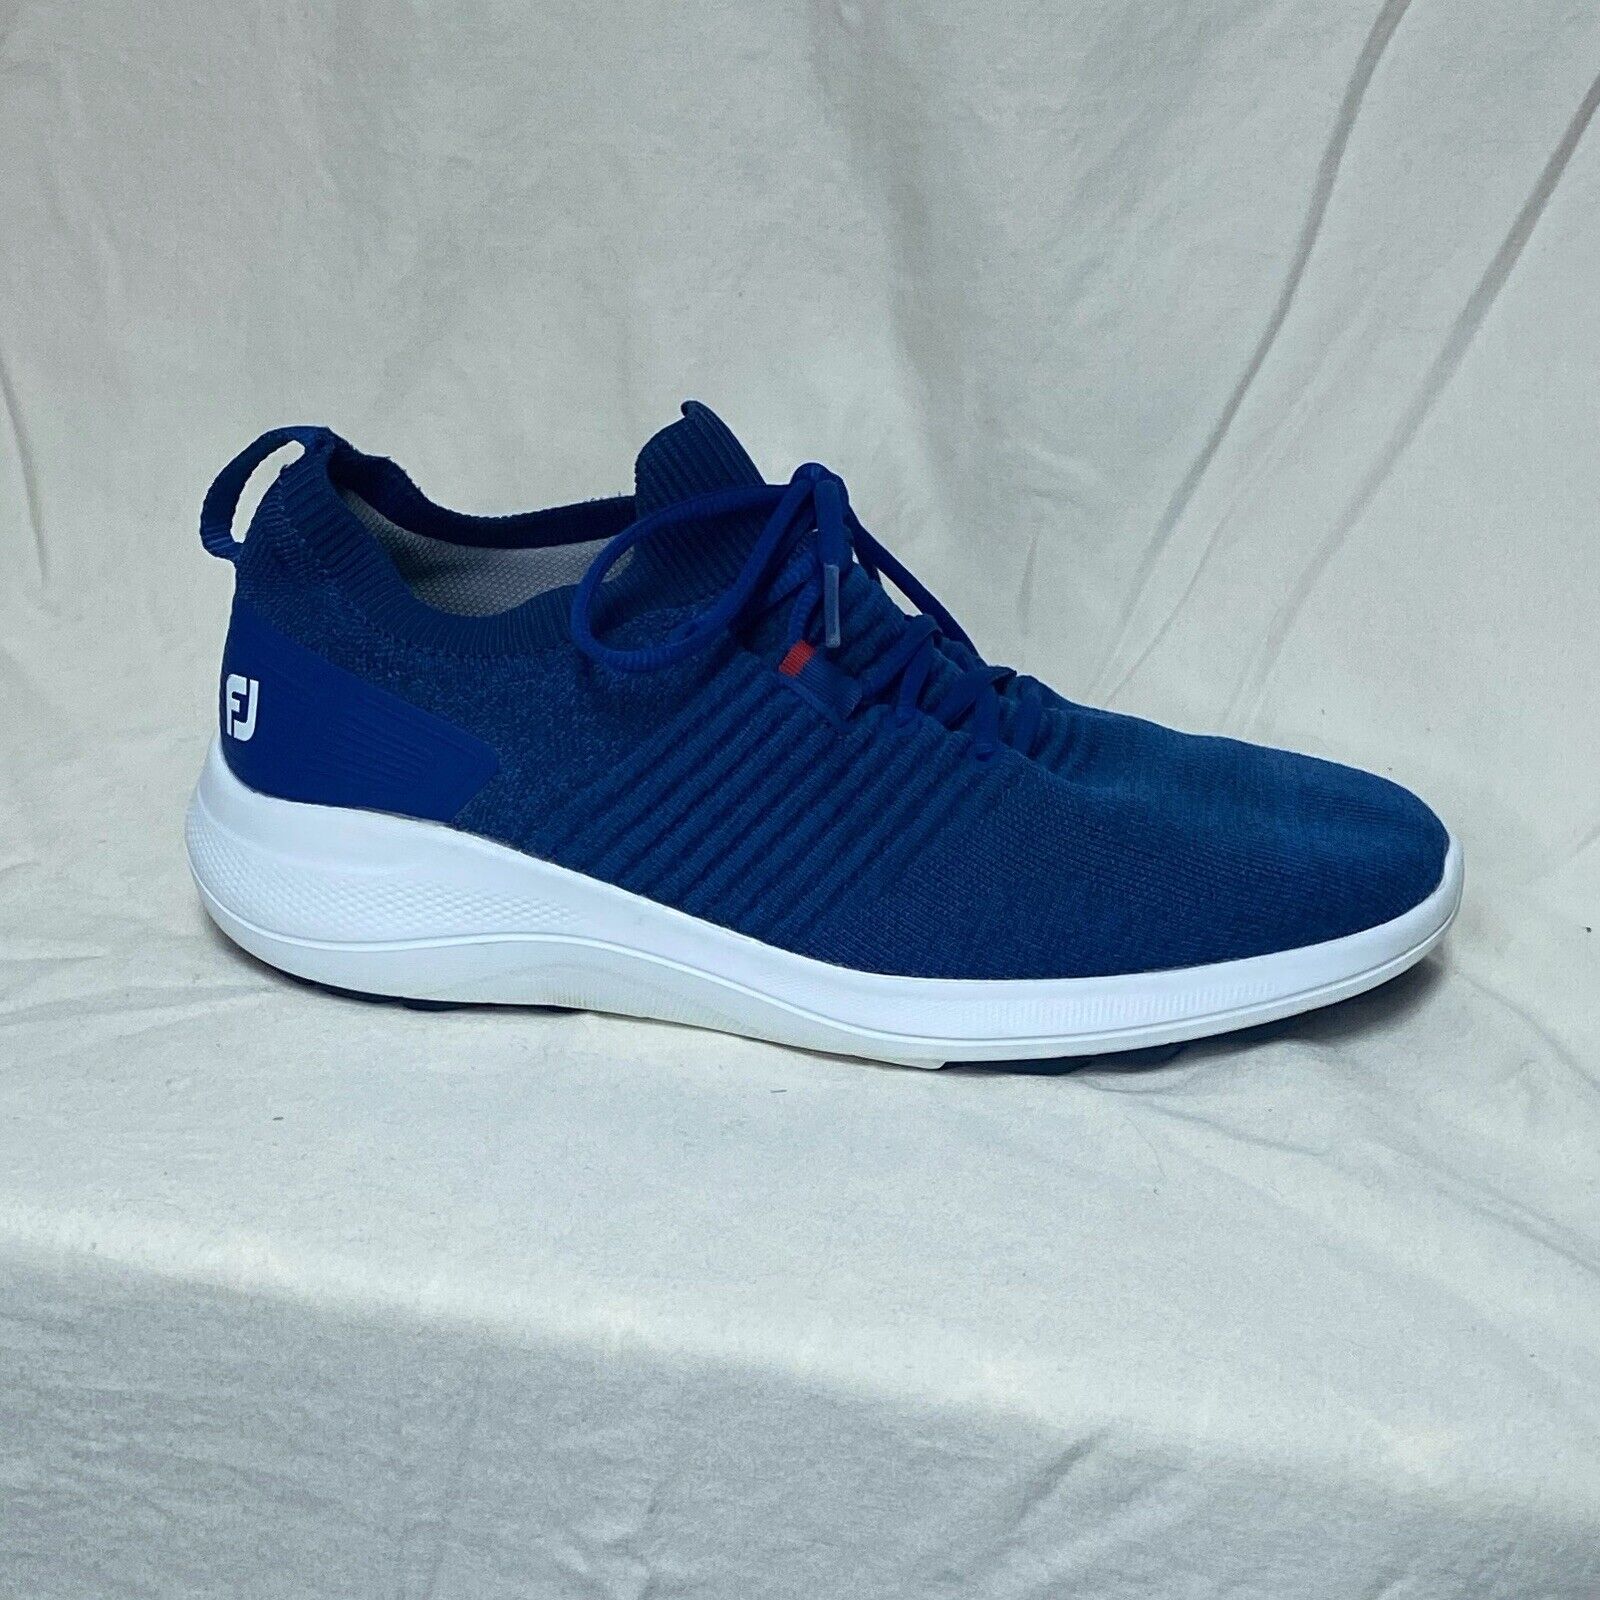 FOOTJOY FLEX XP Spikeless Men’s Golf Shoes Color BLUE Size 10M / 56268